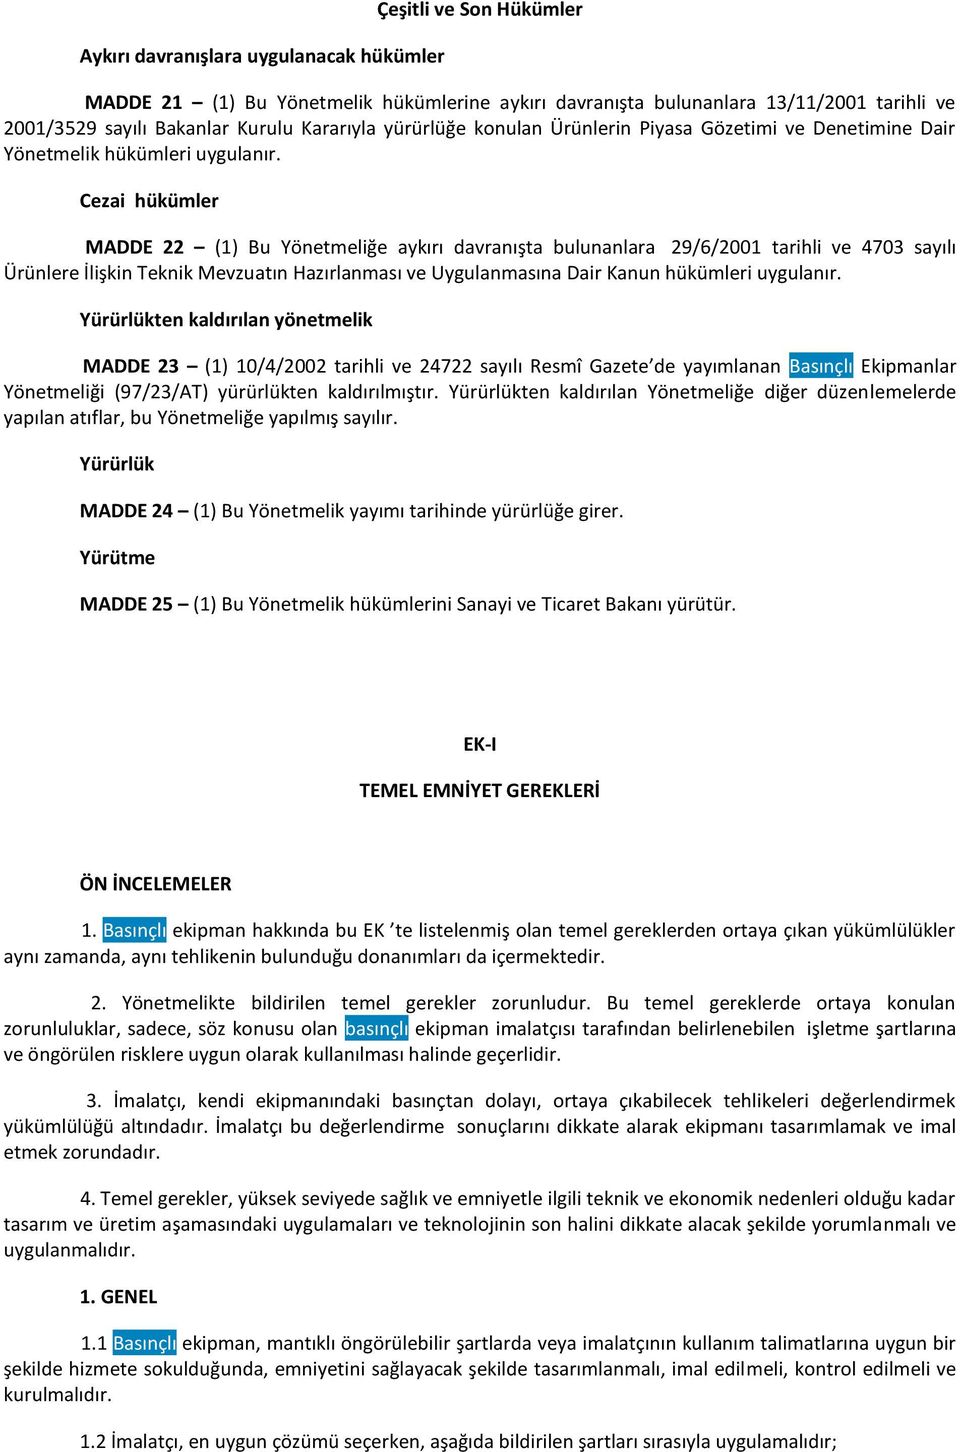 Cezai hükümler MADDE 22 (1) Bu Yönetmeliğe aykırı davranışta bulunanlara 29/6/2001 tarihli ve 4703 sayılı Ürünlere İlişkin Teknik Mevzuatın Hazırlanması ve Uygulanmasına Dair Kanun hükümleri